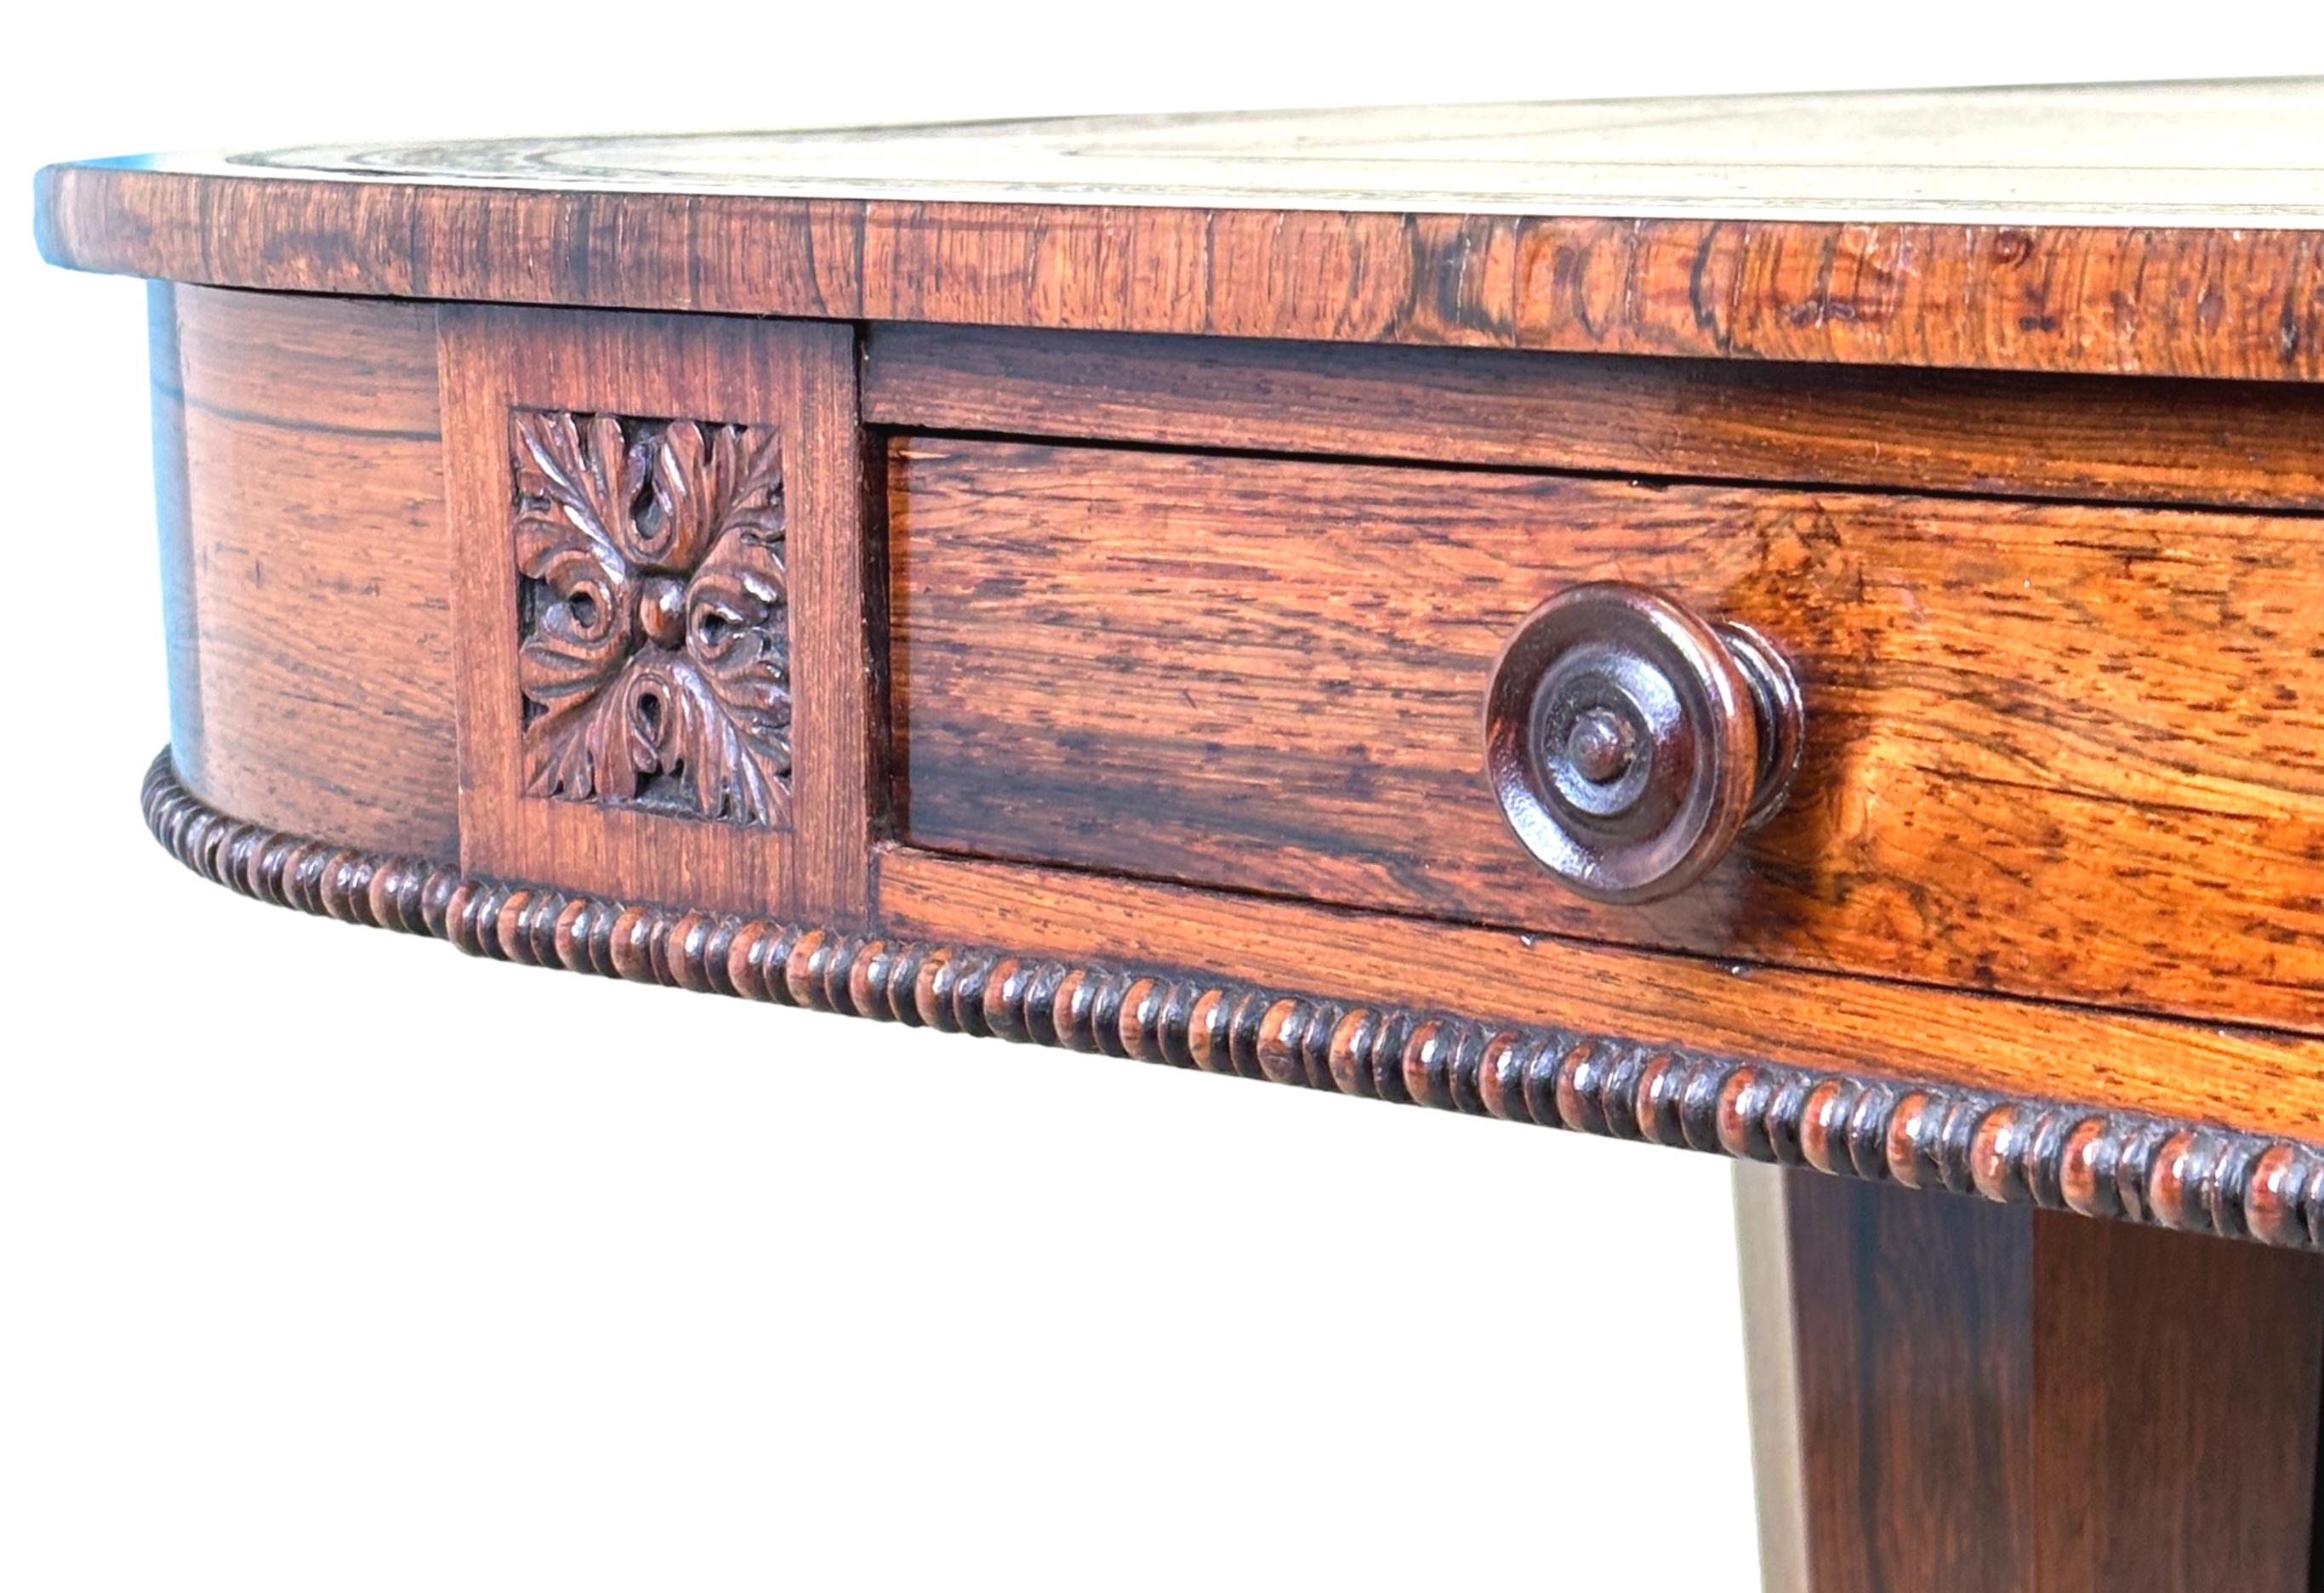 Table d'écriture en bois de rose de qualité exceptionnelle, datant du milieu du XIXe siècle, de la période William IV, avec un insert en cuir travaillé à l'aveugle sur un plateau à bandes croisées, au-dessus de deux tiroirs avec des boutons en bois